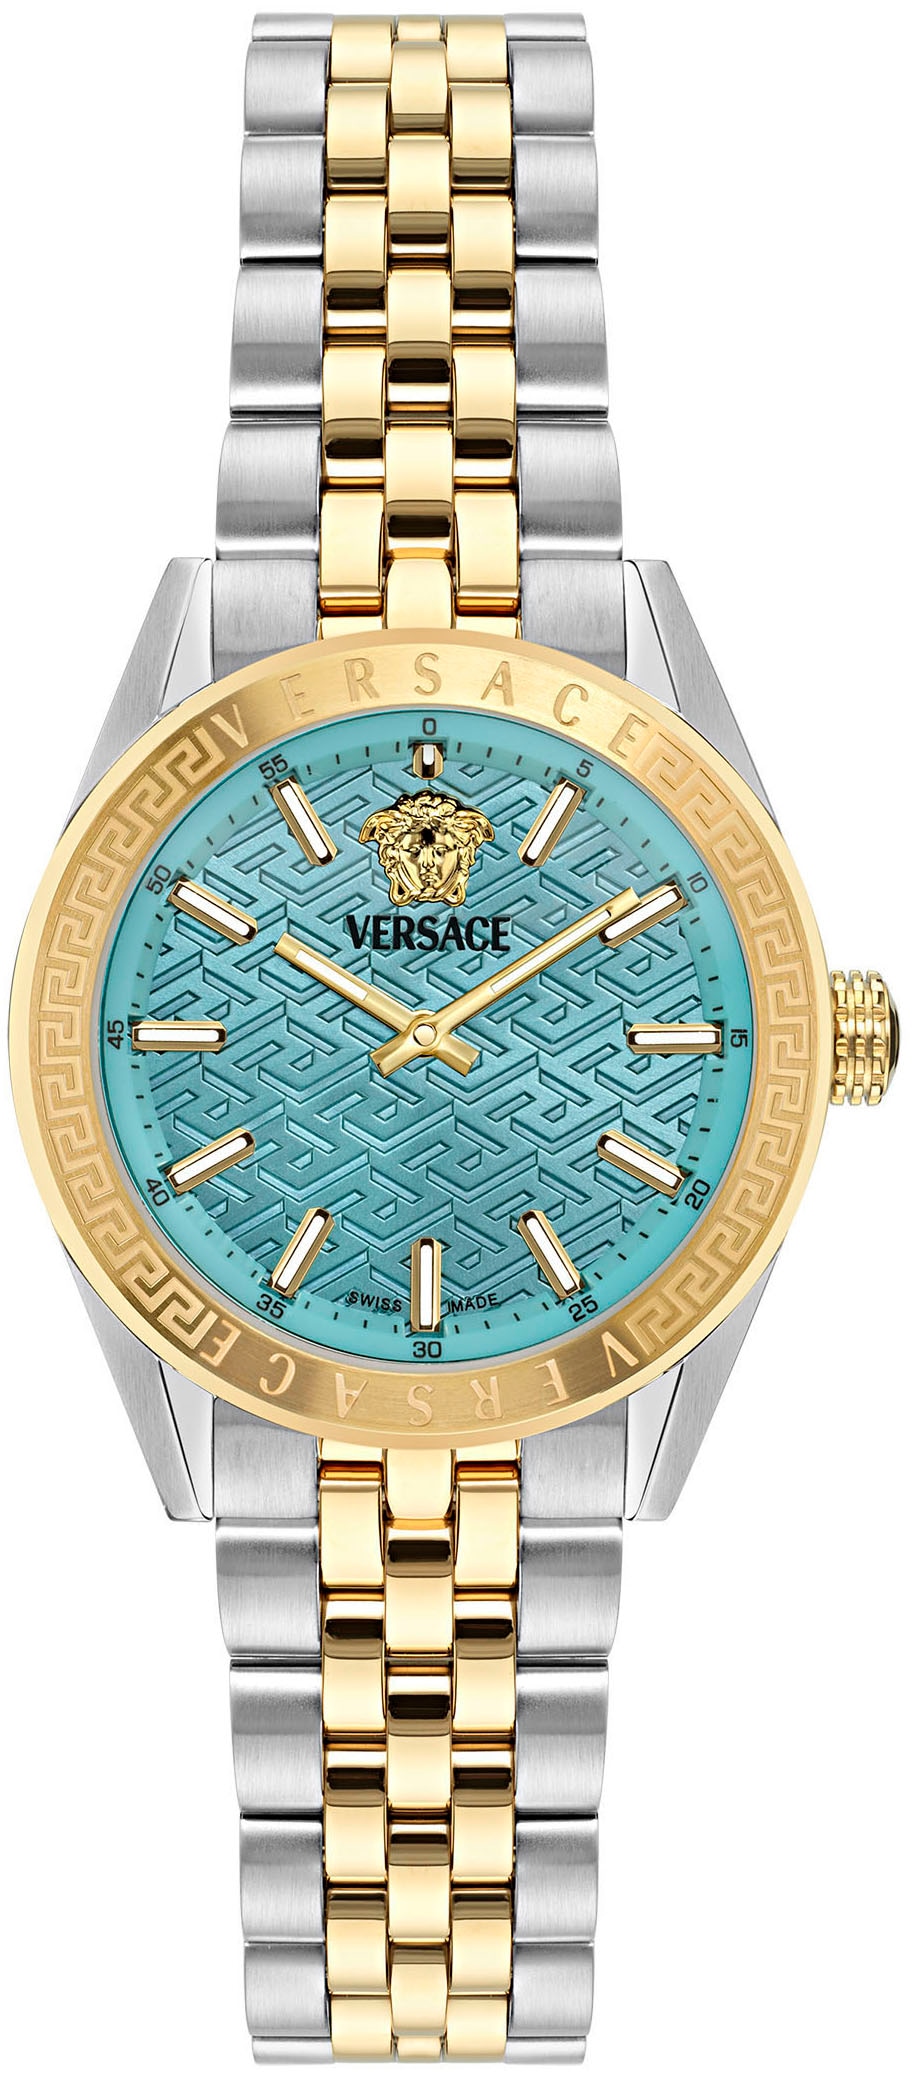 Versace Quarzuhr »V-CODE«, Armbanduhr, Damenuhr, Saphirglas, Swiss Made, Leuchtindizes, analog